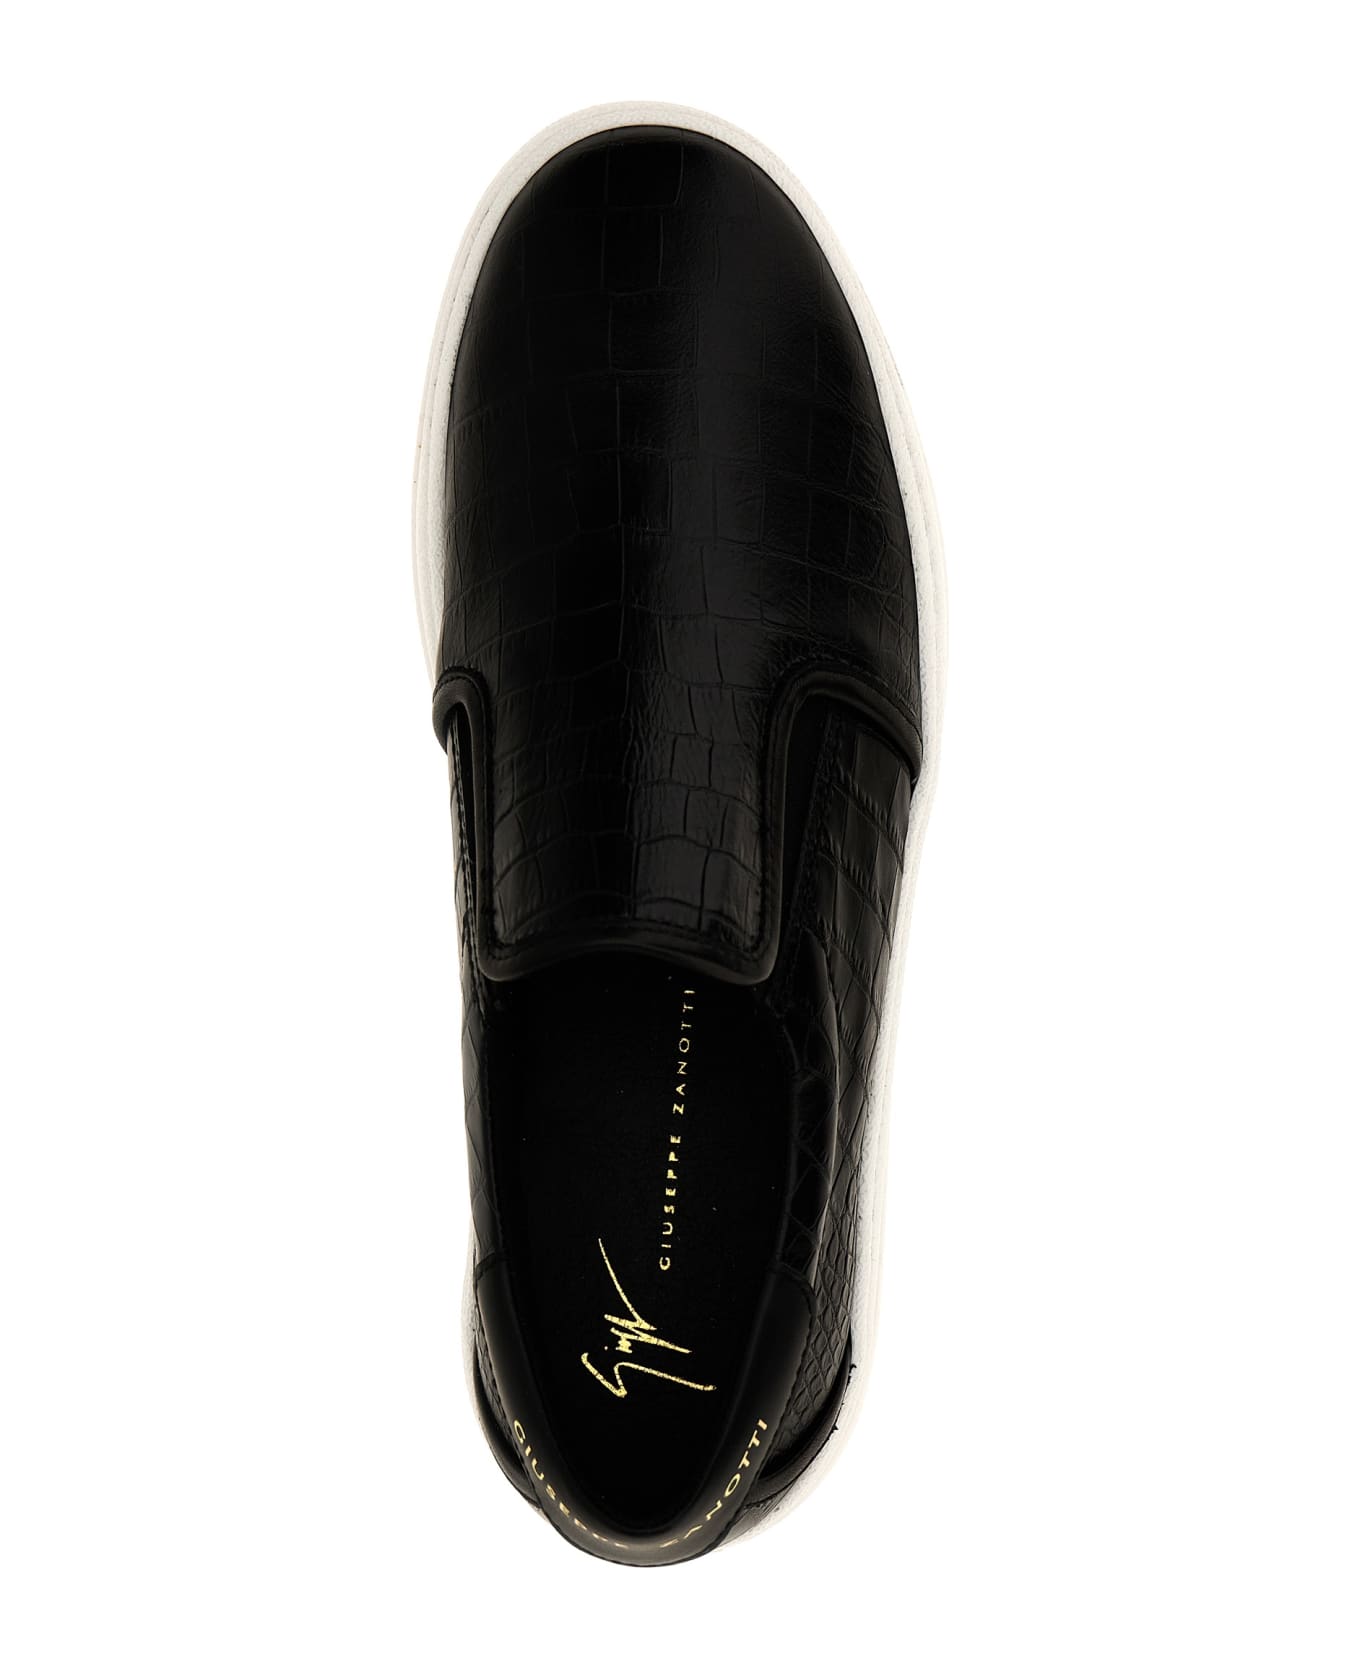 Giuseppe Zanotti 'gz/94' Sneakers - Black   スニーカー